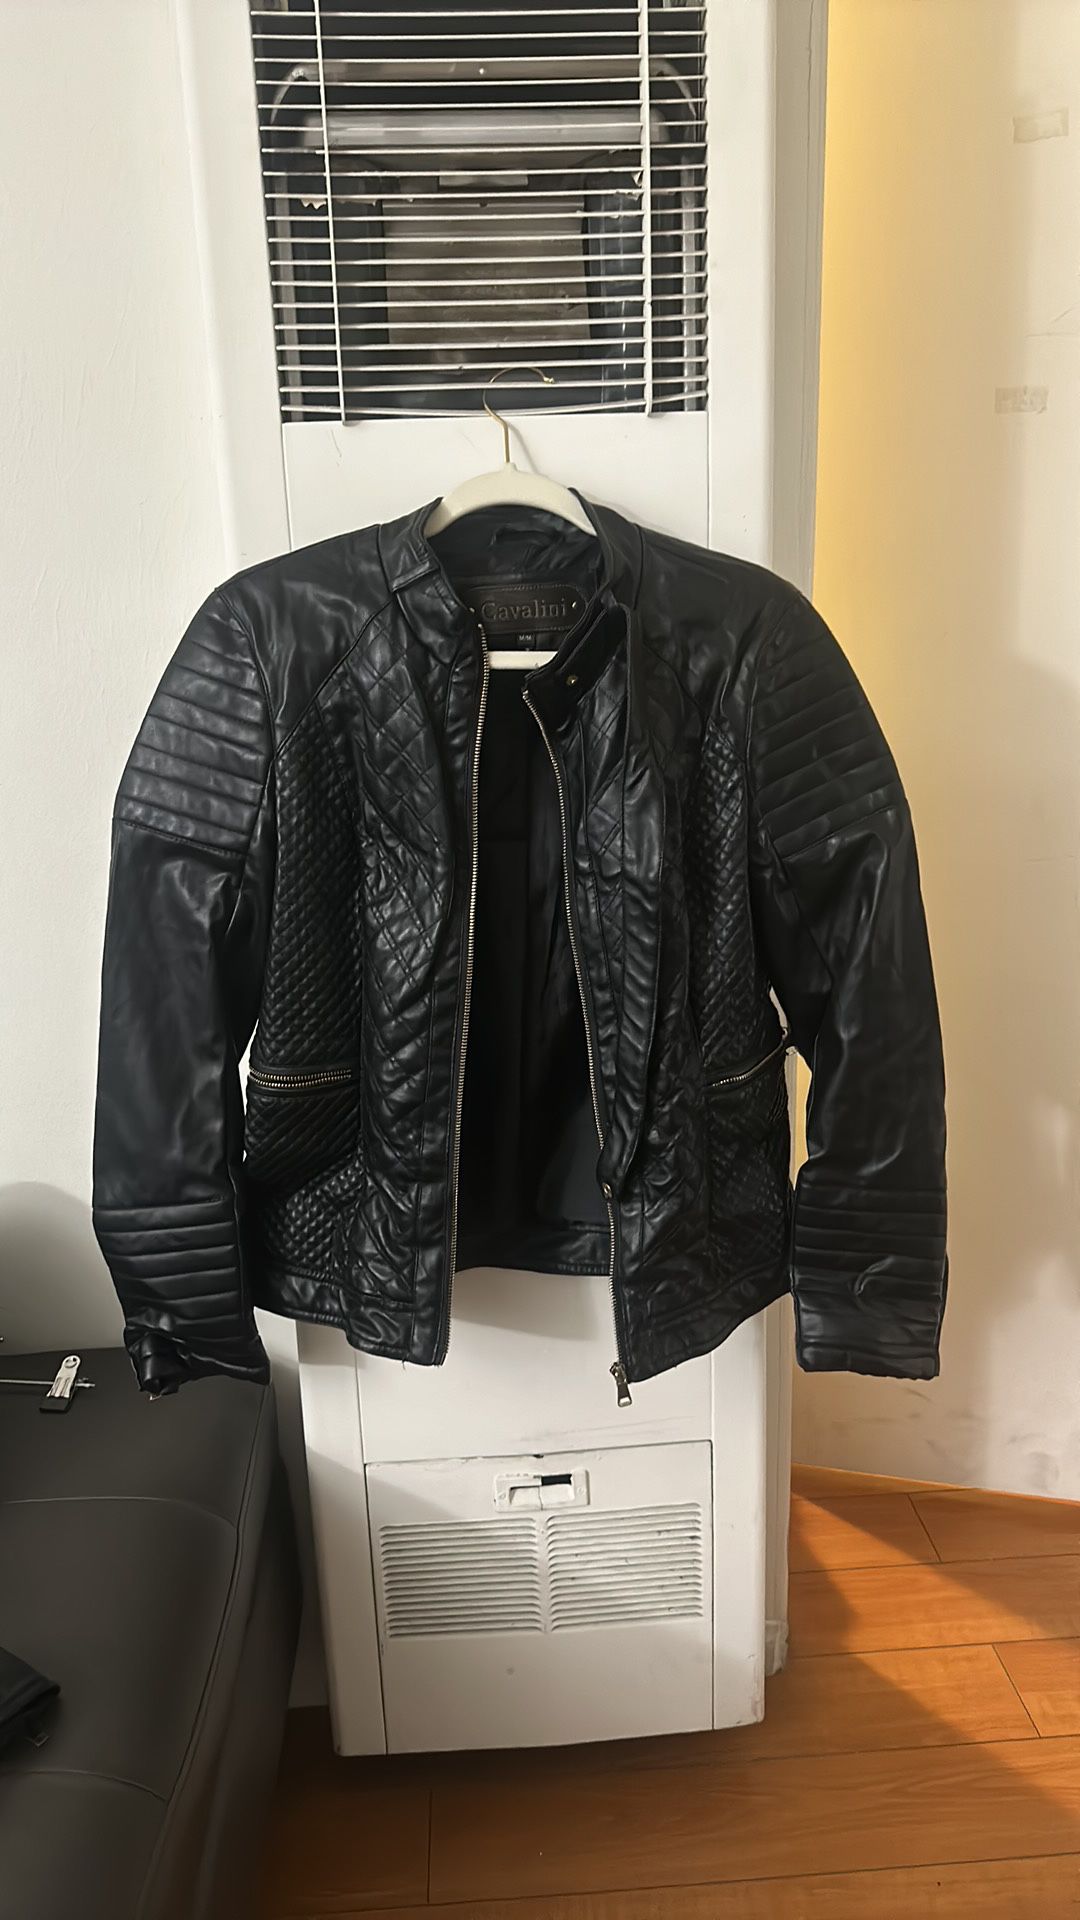 Cavalini Leather Jacket